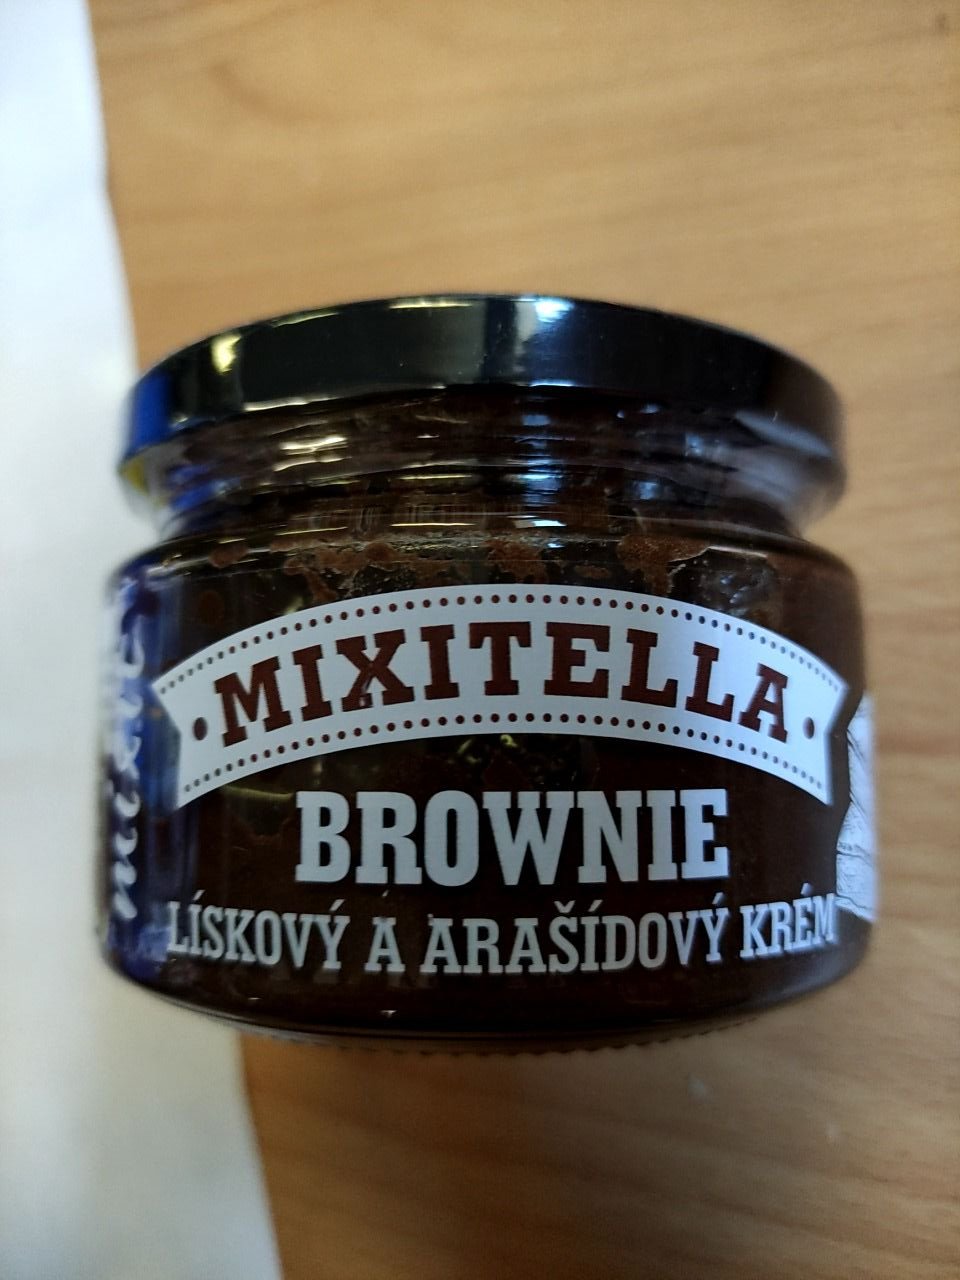 Brownie - lískový a arašídový krém Mixitella 250 g